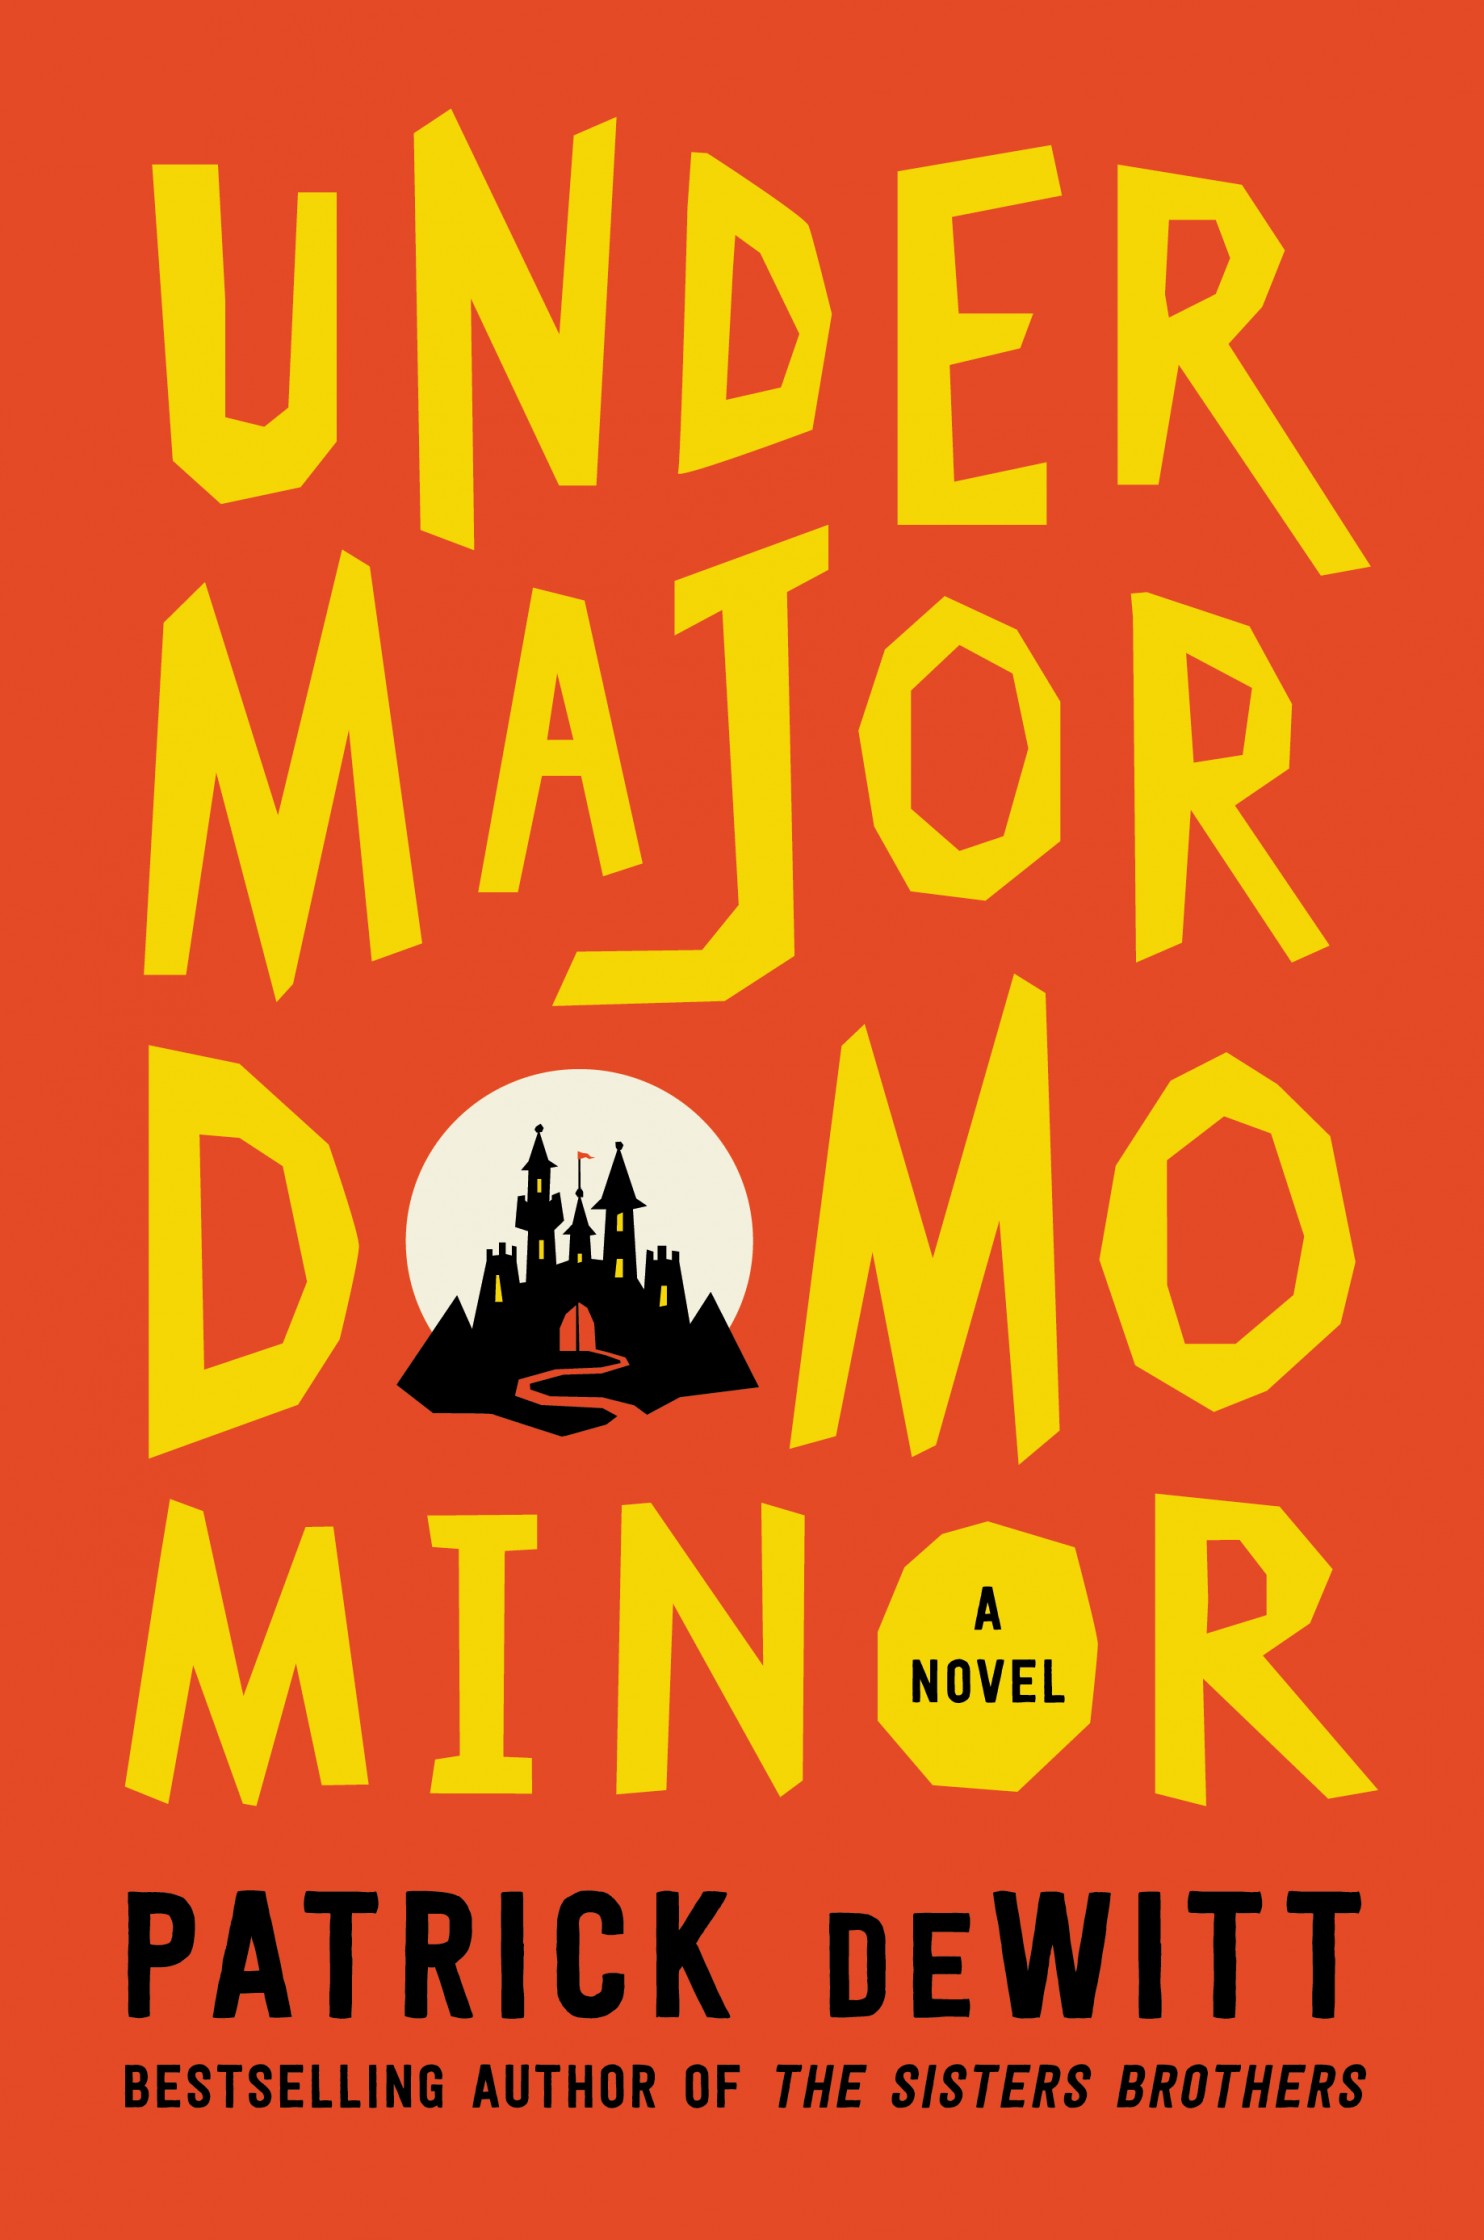 Top 10 Fiction Undermajordomo Minor by Patrick DeWitt